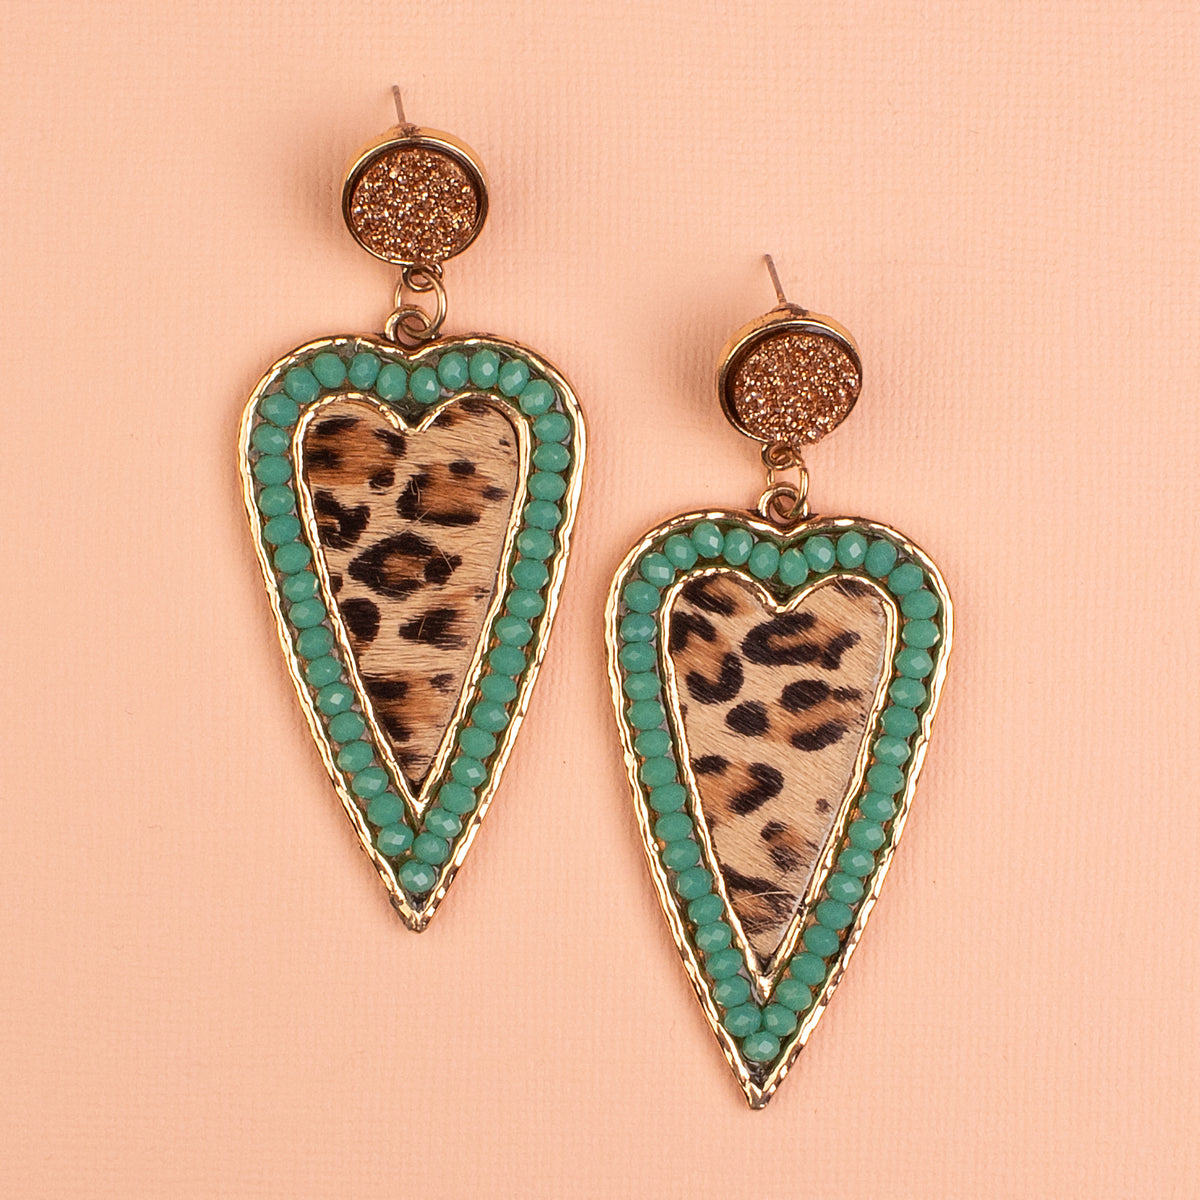 734034 - Leopard Heart Earrings - Turquoise - Fashion Jewelry Wholesale